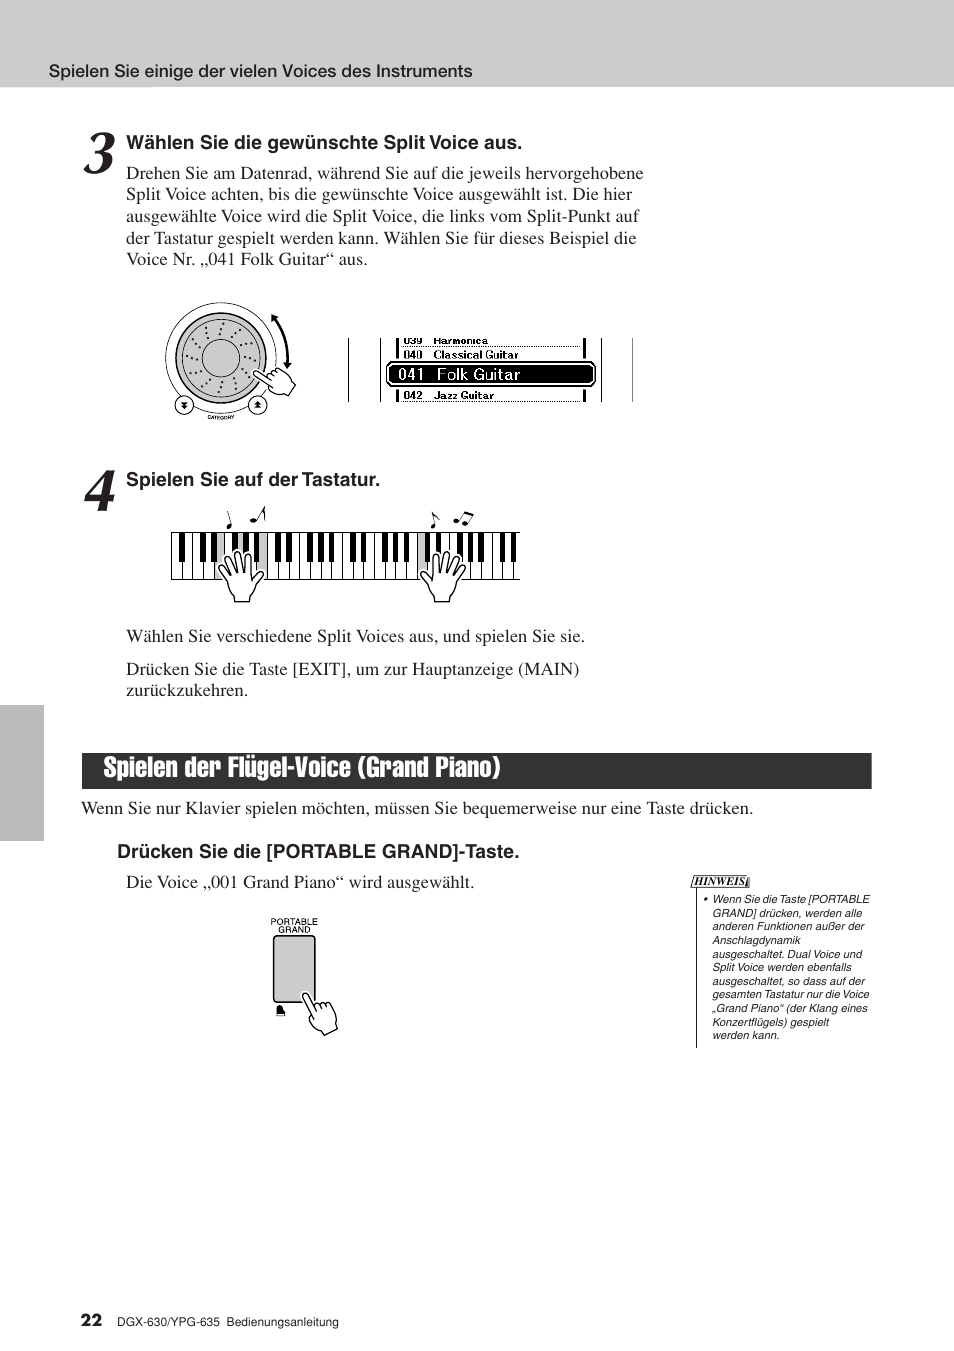 Spielen der flügel-voice (grand piano), Seite 22 | Yamaha DGX-630 Benutzerhandbuch | Seite 22 / 160